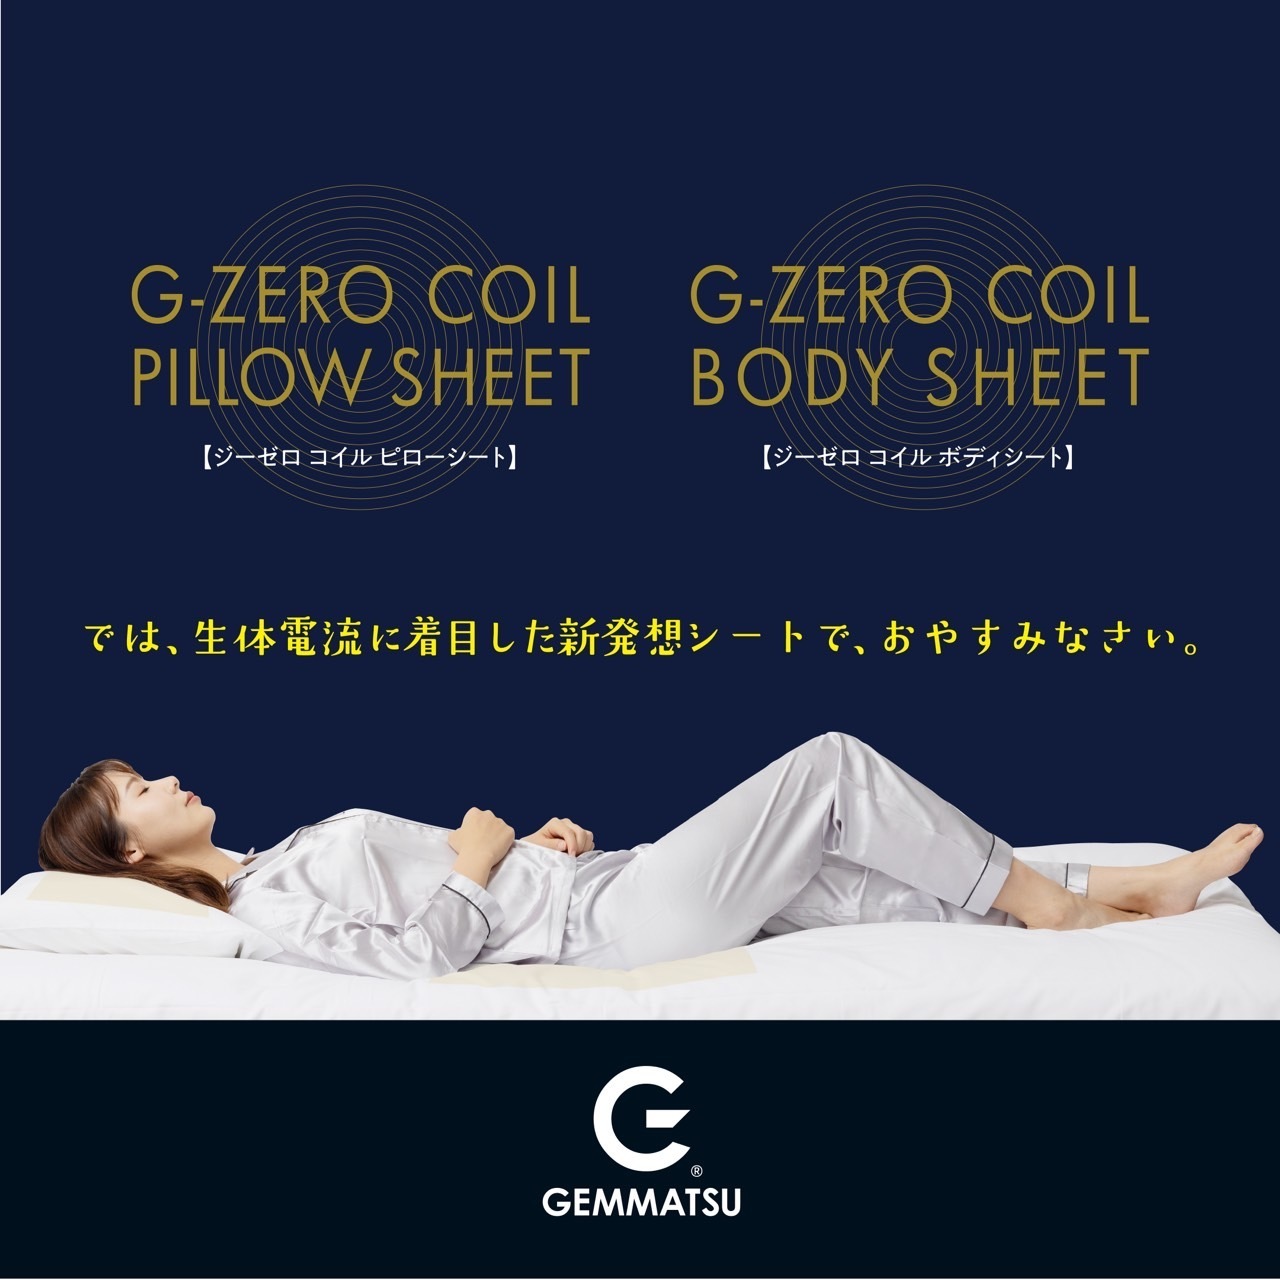 コイルテクノロジーで「上質な睡眠へ」
「あなたの睡眠を変える　G-ZERO COIL SHEET」
11月15日より一般販売開始